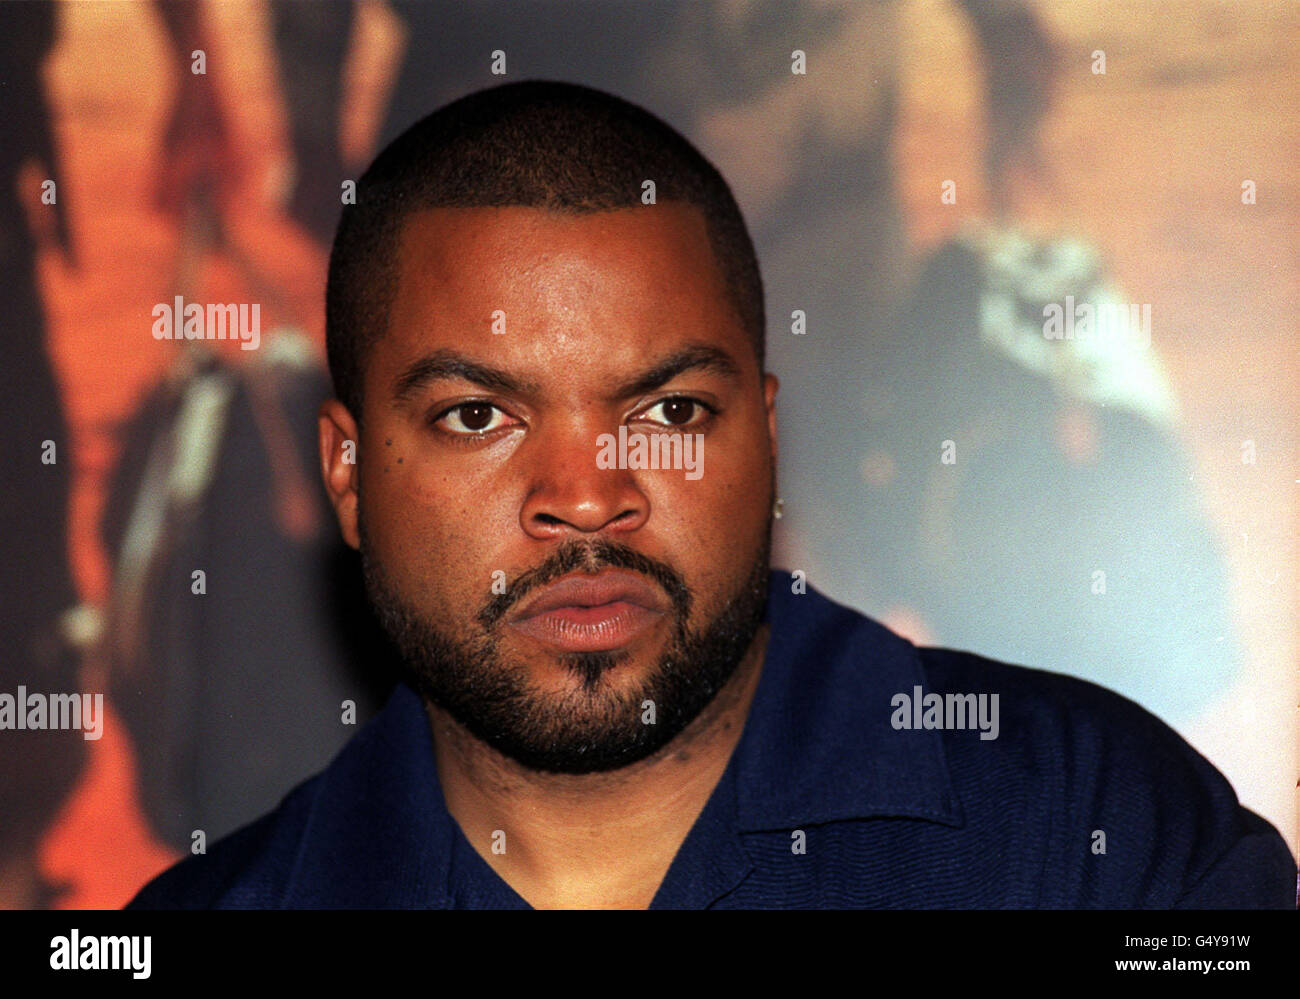 Der ehemalige Rapper-Schauspieler Ice Cube posiert für die Medien vor einem Plakat für seinen neuen Film "Three Kings" in London. Stockfoto